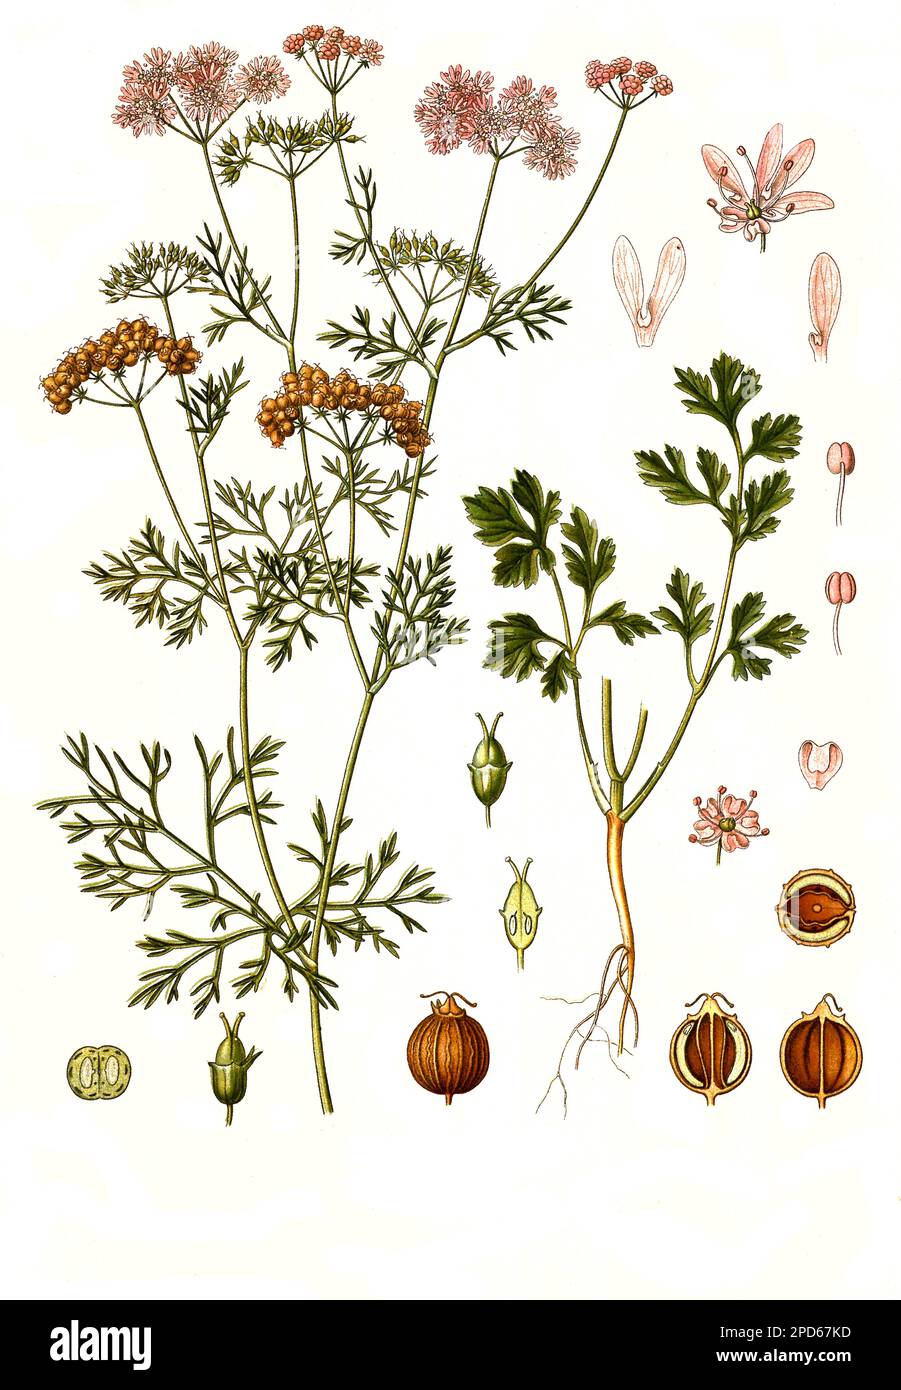 Heilpflanze, Echte Koriander (Coriandrum sativum), kurz Koriander, Historisch, restaurierte digital Reproduktion von einer Vorlage en 19. Jahrhundert, Foto de stock